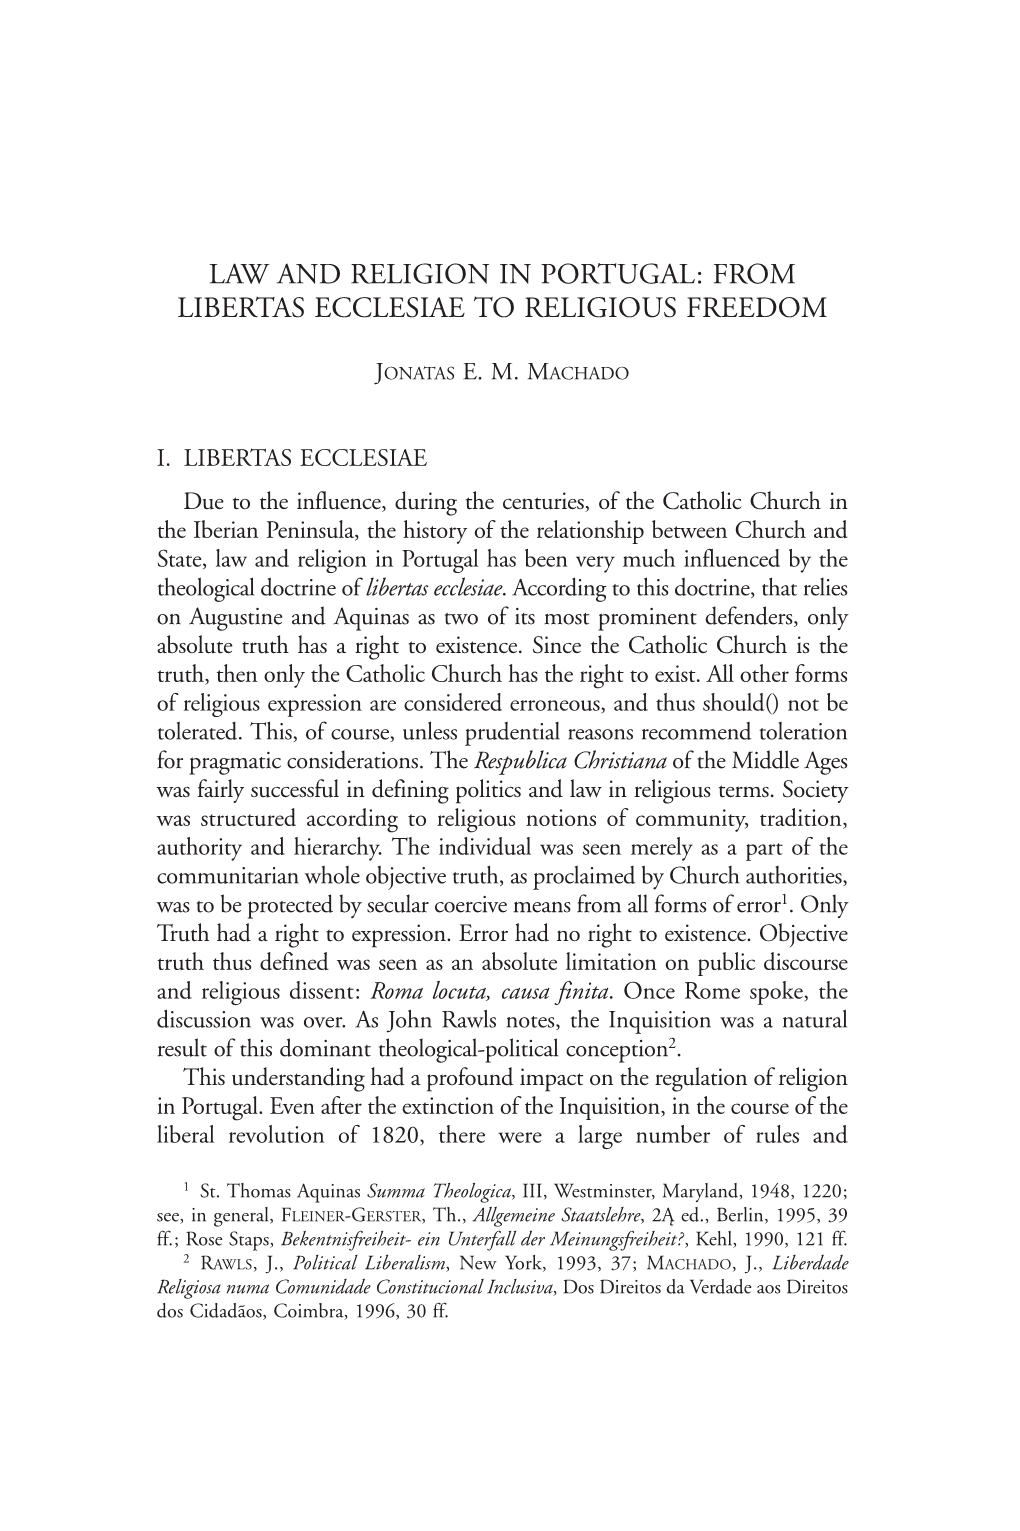 From Libertas Ecclesiae to Religious Freedom